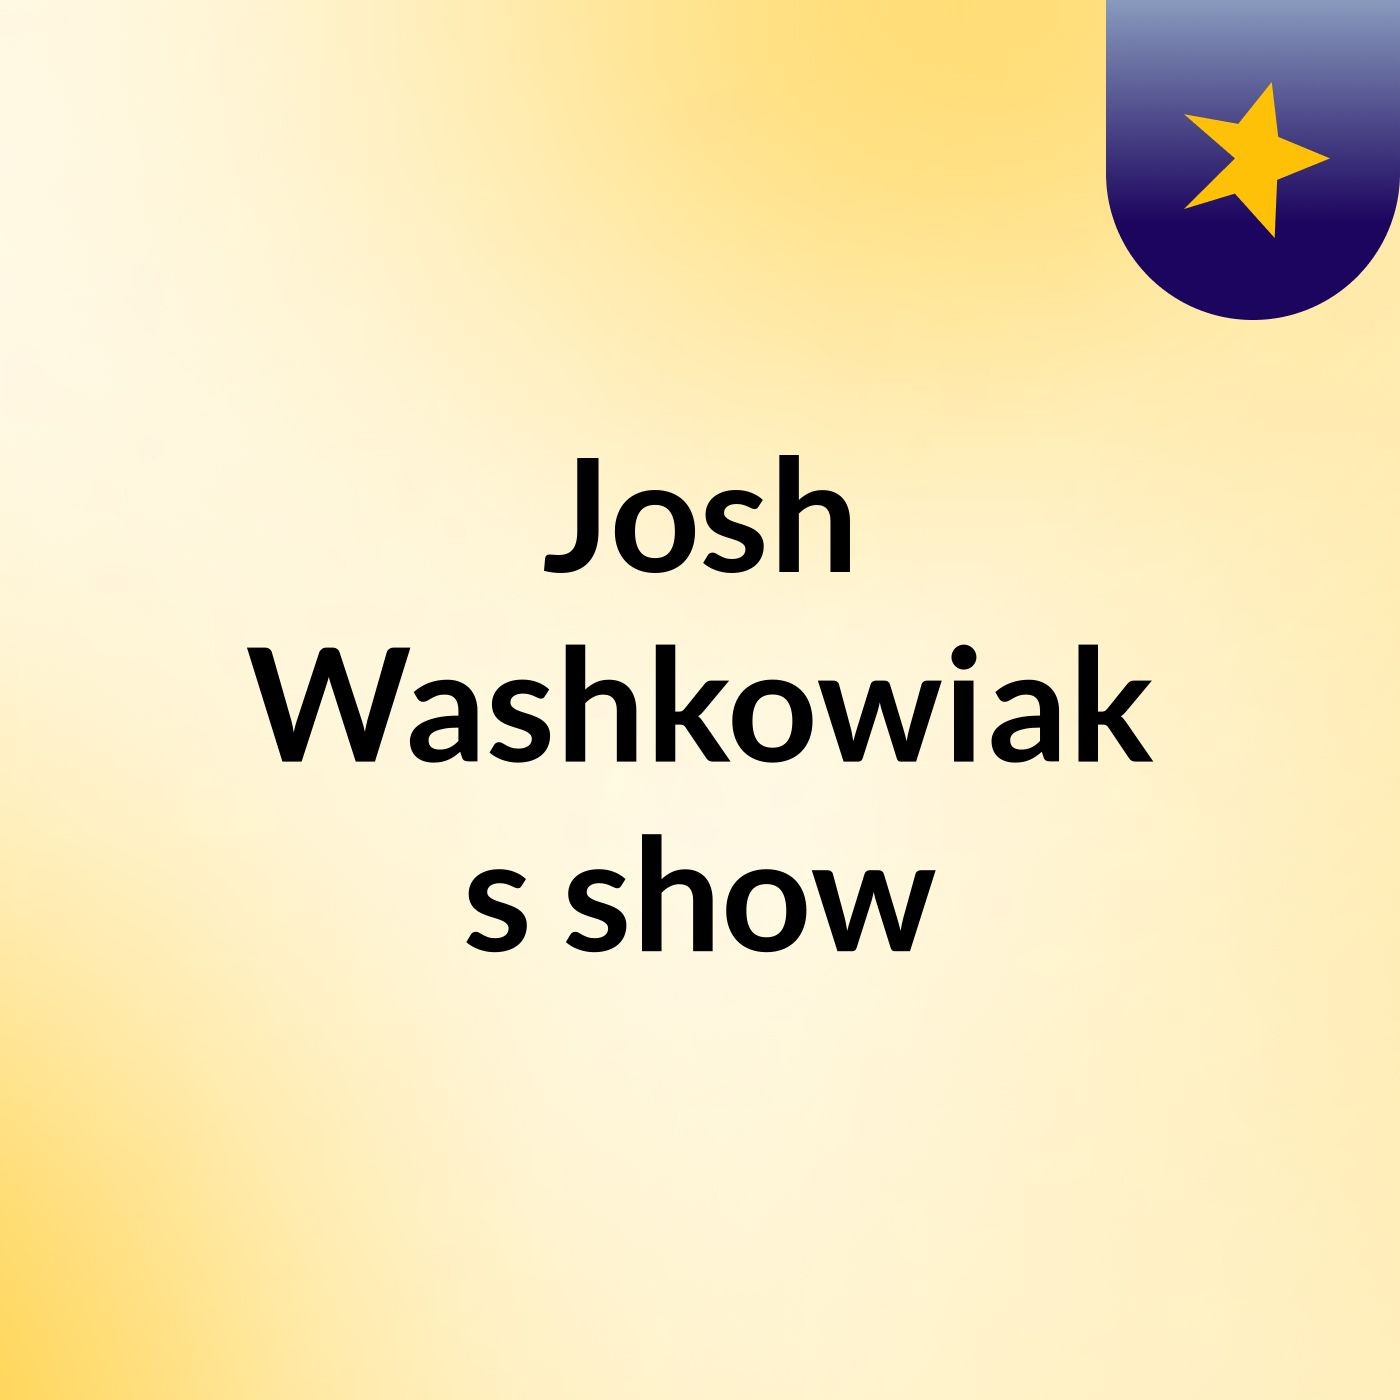 Josh Washkowiak's show